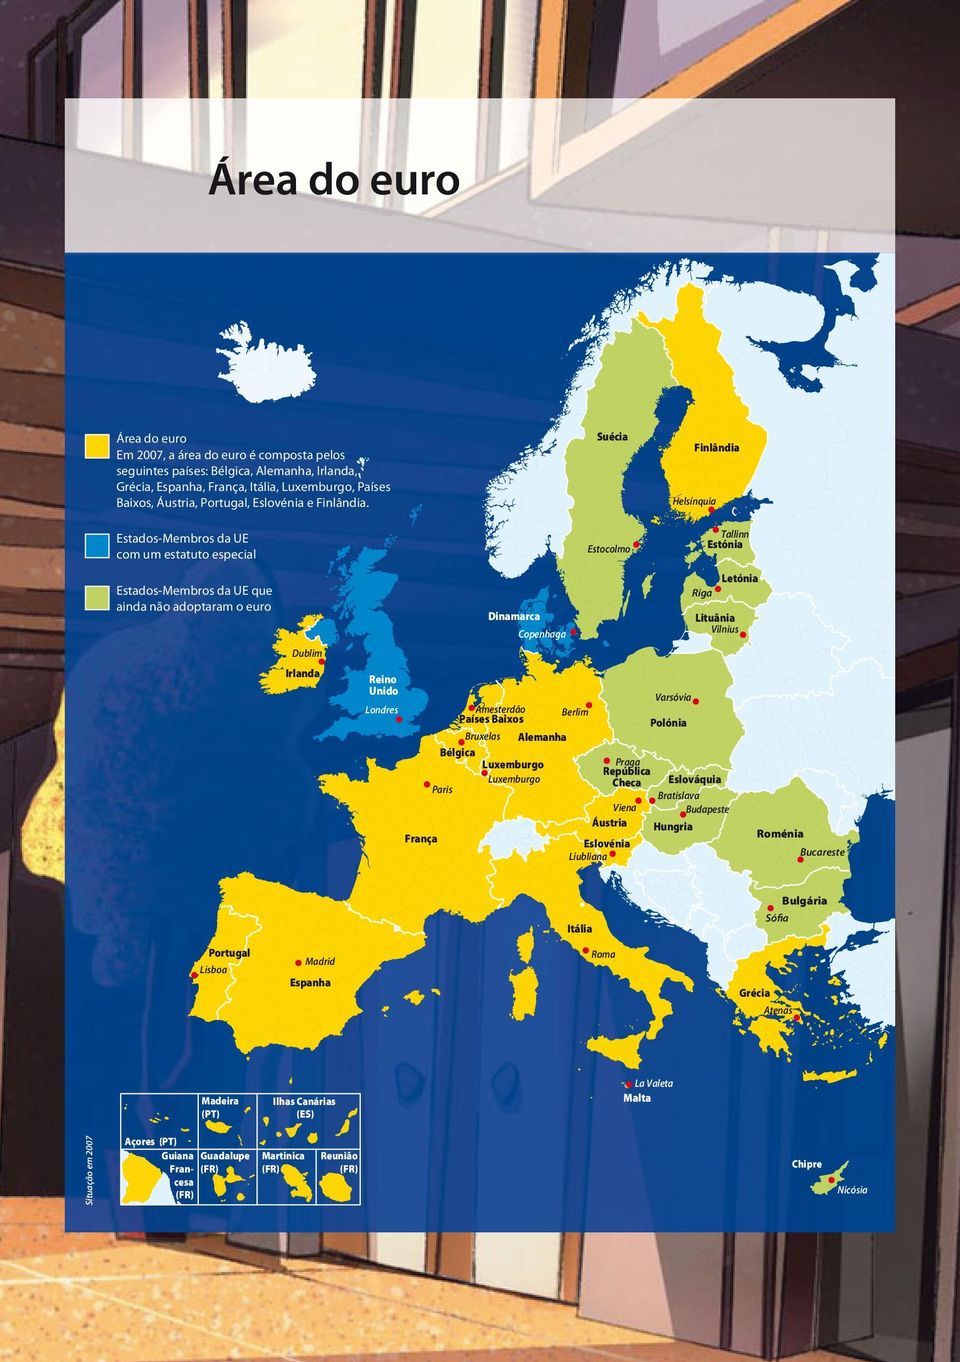 Estados-Membros da UE com um estatuto especial Suécia Estocolmo Finlândia Helsínquia Tallinn Estónia Estados-Membros da UE que ainda não adoptaram o euro Dublim Irlanda Dinamarca Copenhaga Letónia